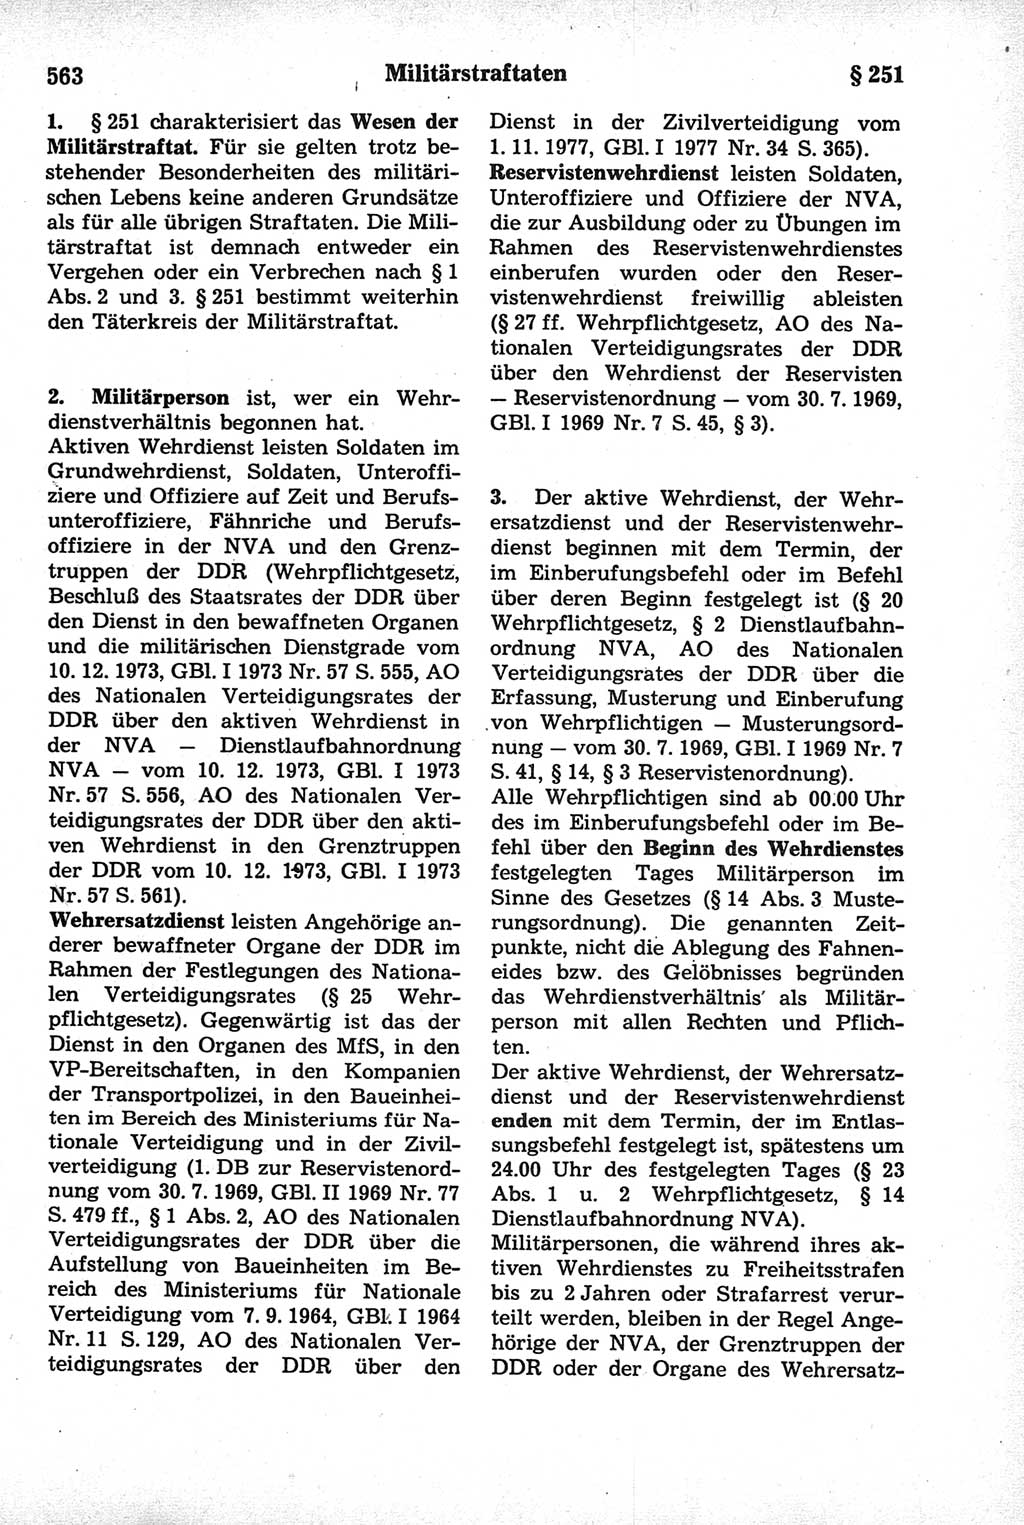 Strafrecht der Deutschen Demokratischen Republik (DDR), Kommentar zum Strafgesetzbuch (StGB) 1981, Seite 563 (Strafr. DDR Komm. StGB 1981, S. 563)